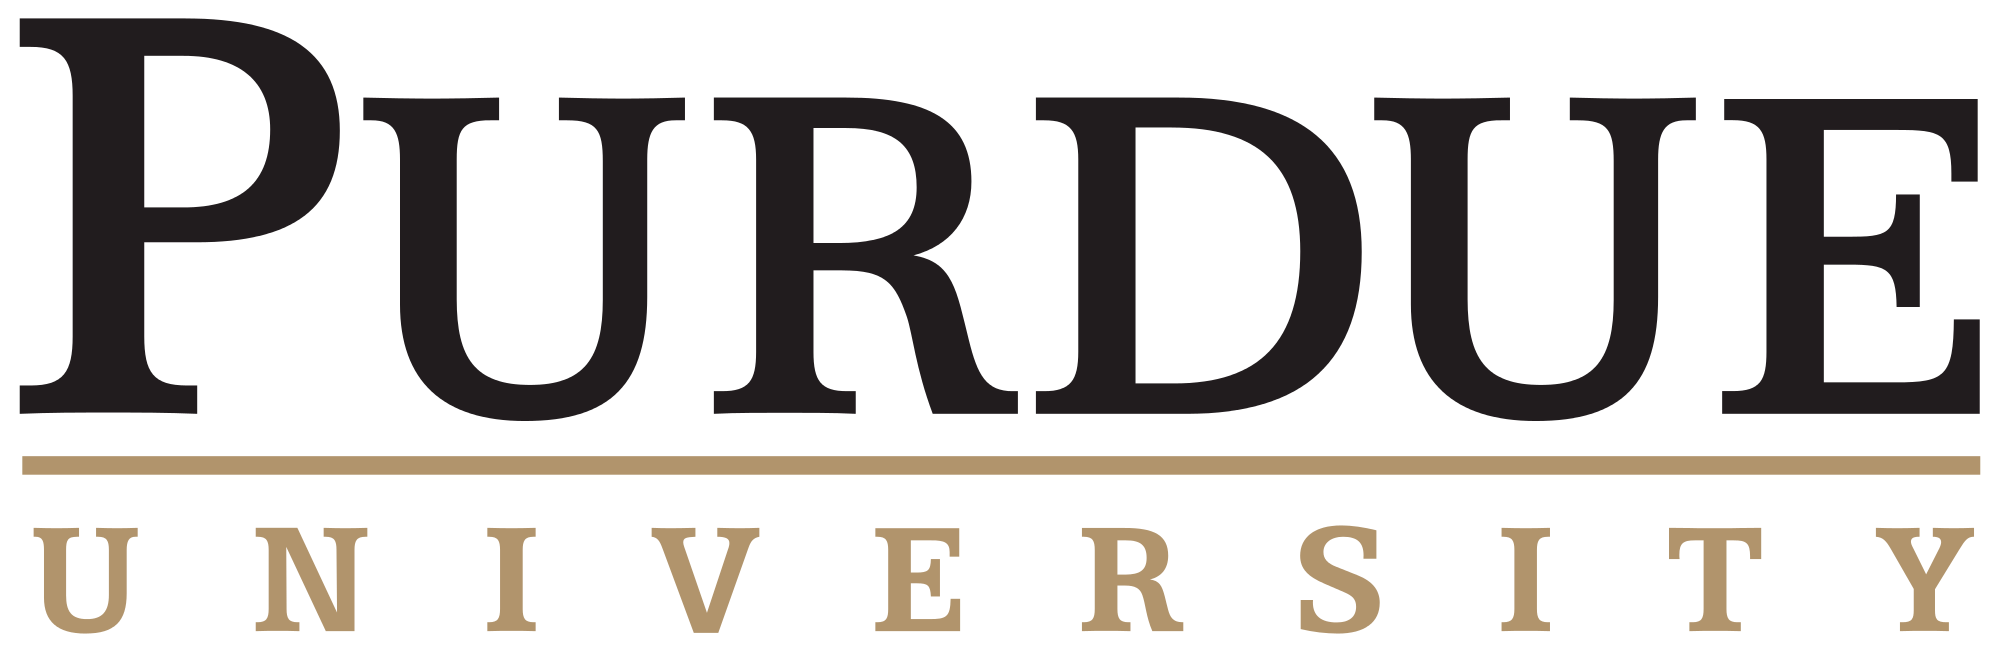 Purdue_University_logo.svg.png